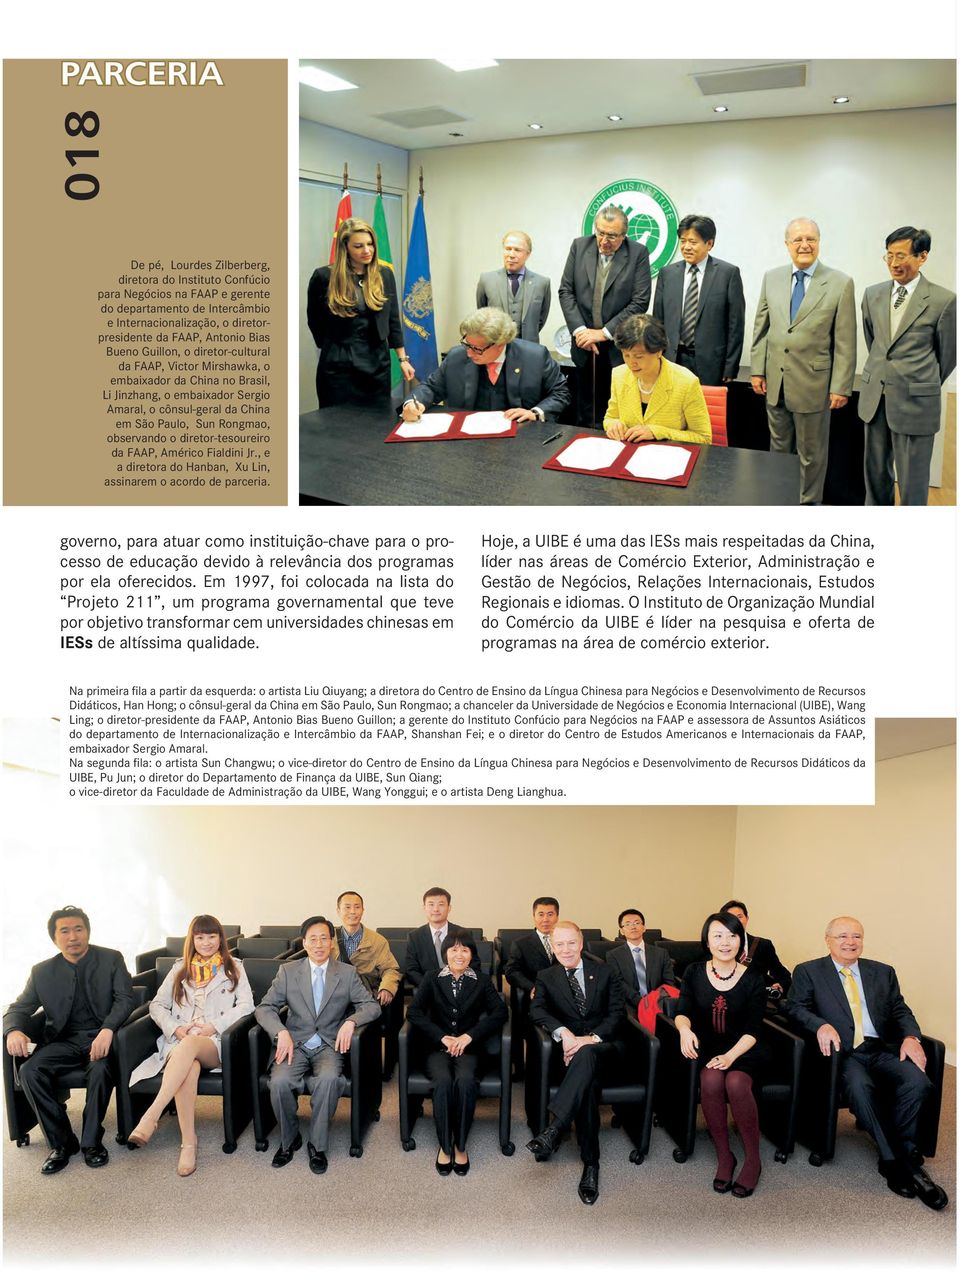 diretor-tesoureiro da FAAP, Américo Fialdini Jr., e a diretora do Hanban, Xu Lin, assinarem o acordo de parceria.